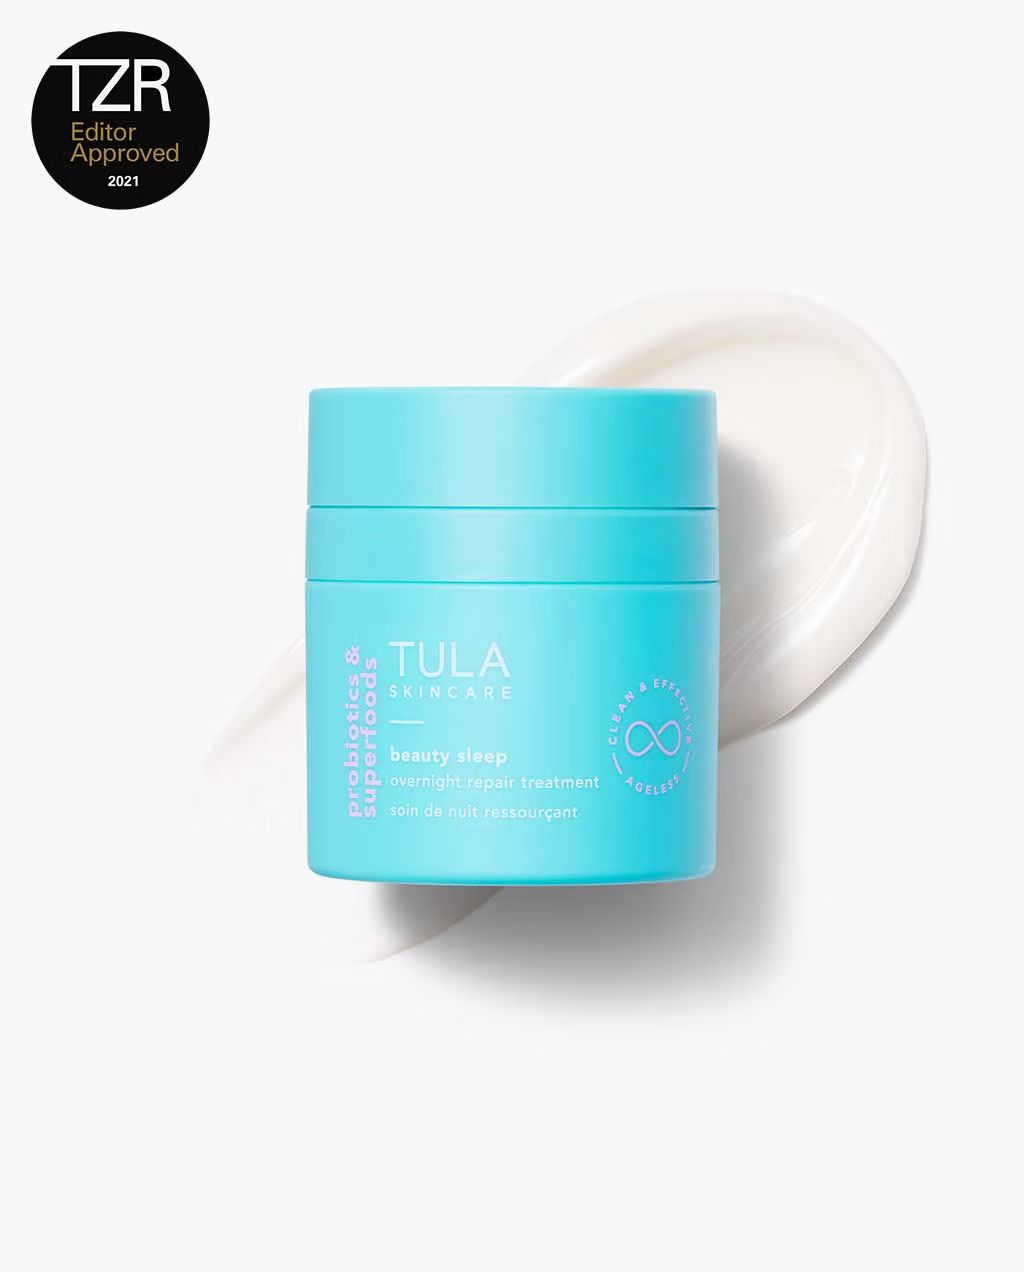 TULA Life, Inc | Tula Skincare